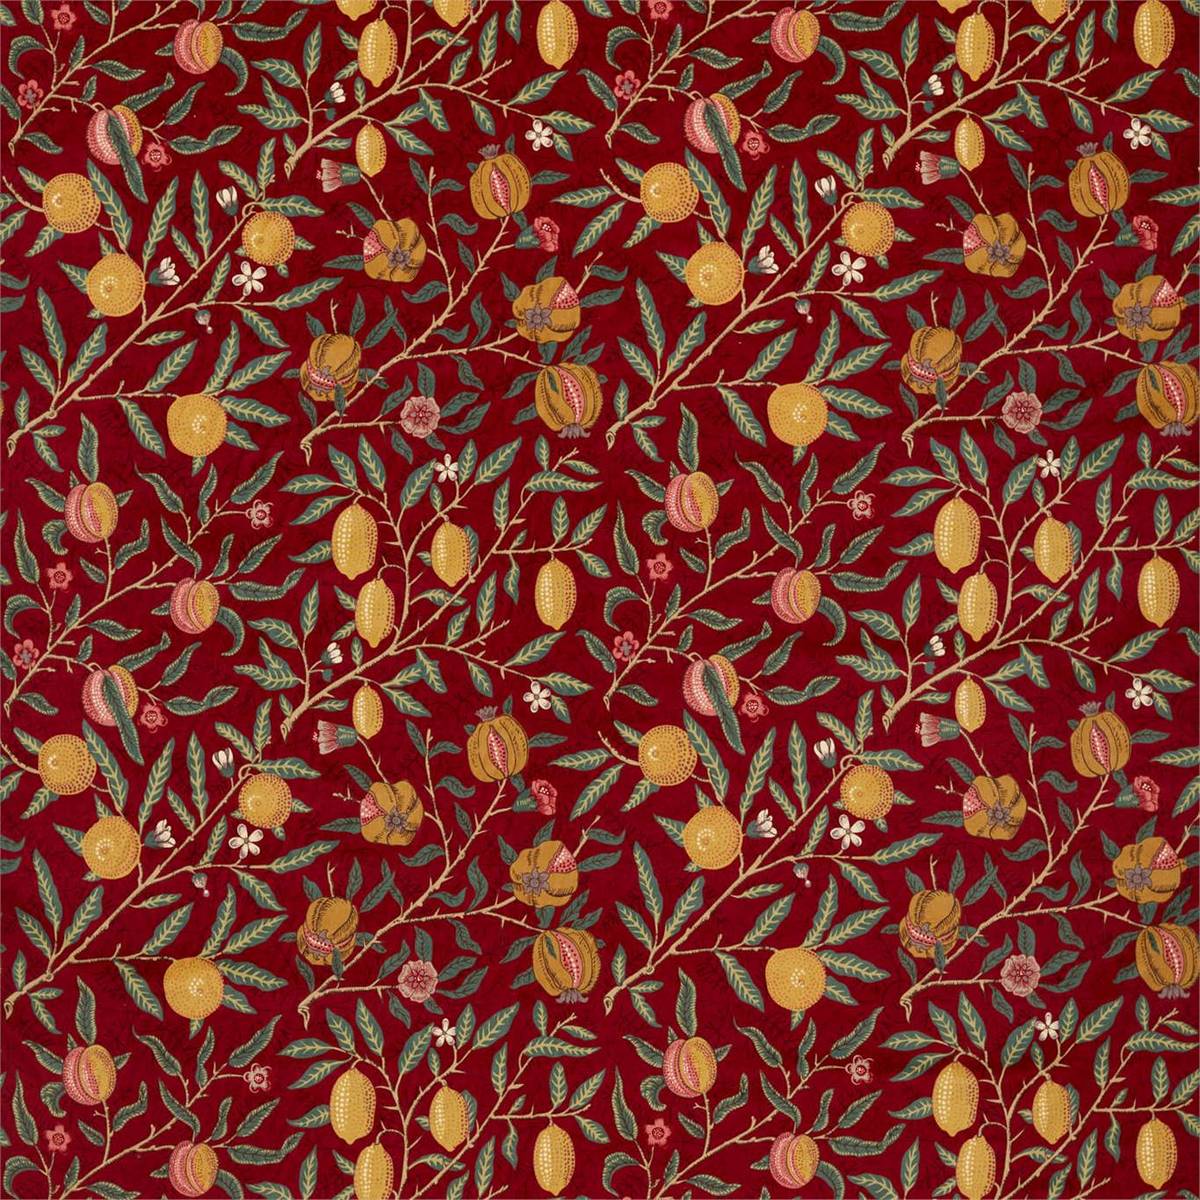 Fruit Velvet Madder/Bayleaf Fabric by William Morris & Co.